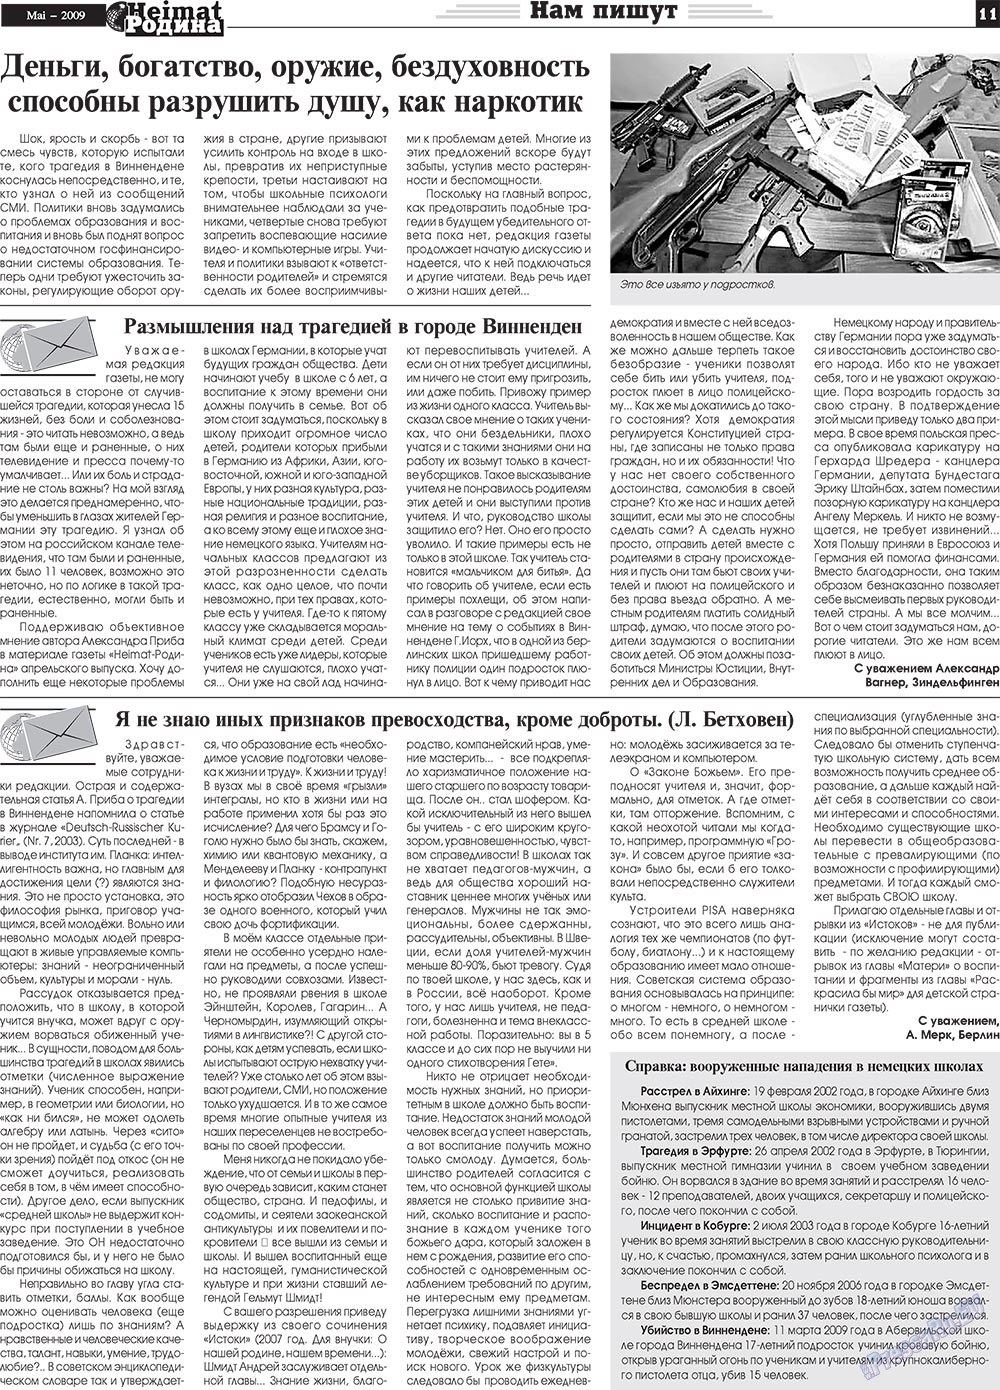 Heimat-Родина (газета). 2009 год, номер 5, стр. 11